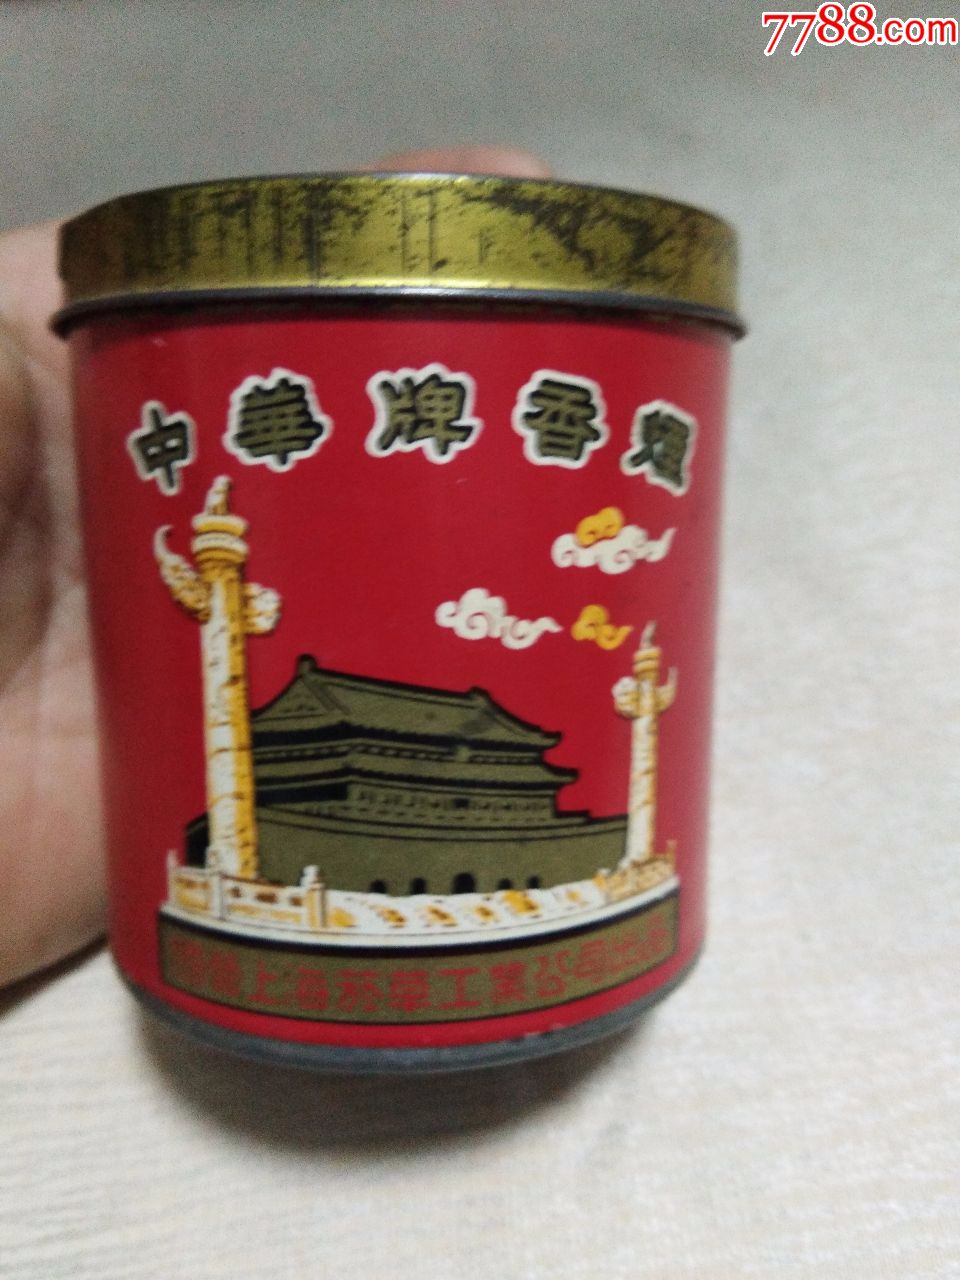 上海卷烟厂出品中华牌五十支装圆筒铁烟盒,盖上有字:南洋兄弟烟草公司